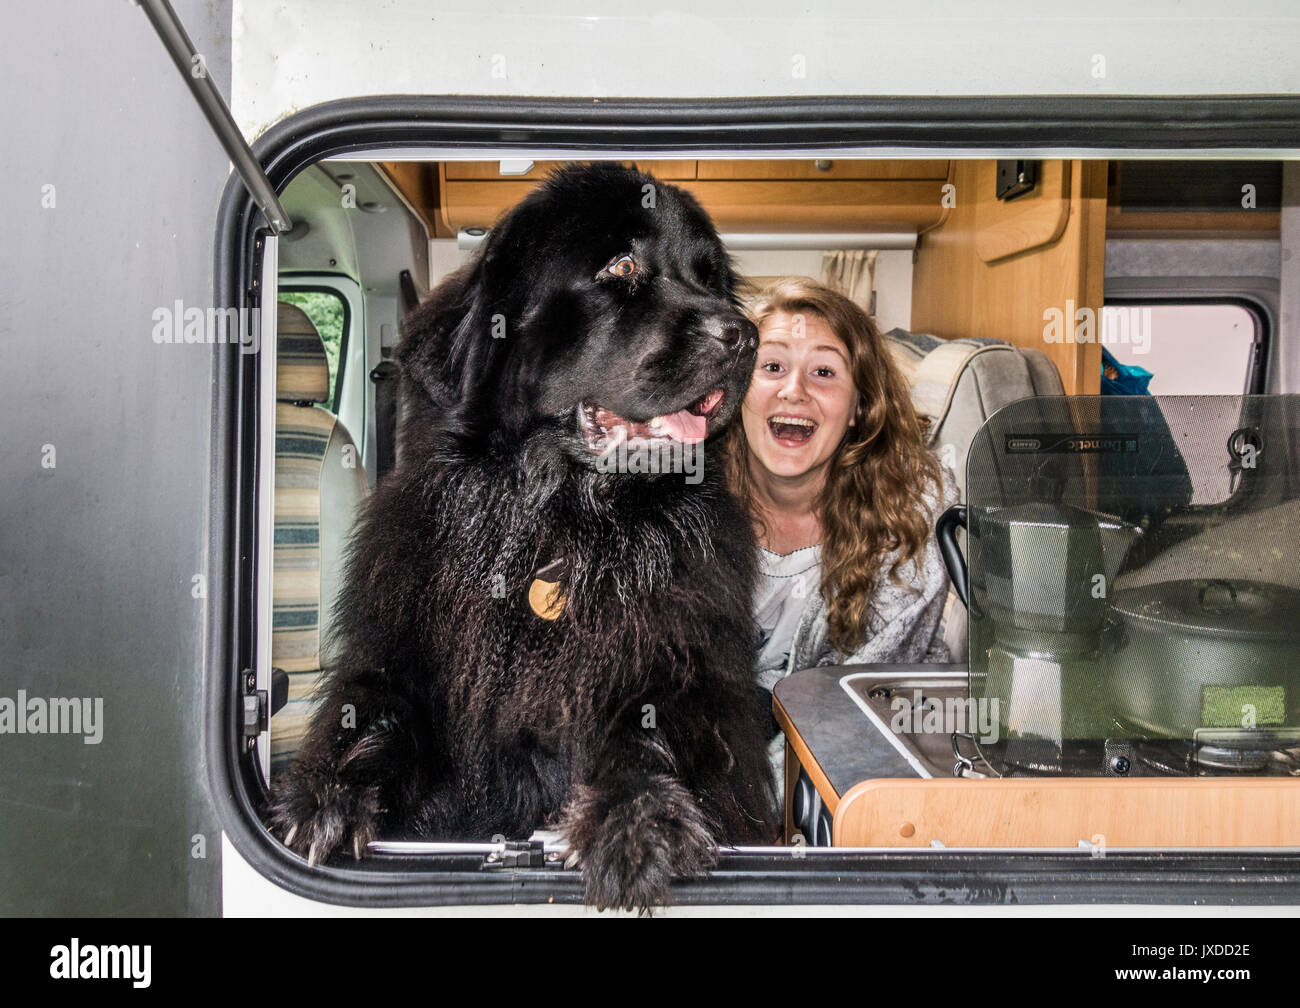 Une jolie jeune femme en vacances dans un camping-car sur un emplacement de camping, souriant joyeusement, avec son chien Terre-neuve libre près de la fenêtre. Angleterre, Royaume-Uni. Banque D'Images